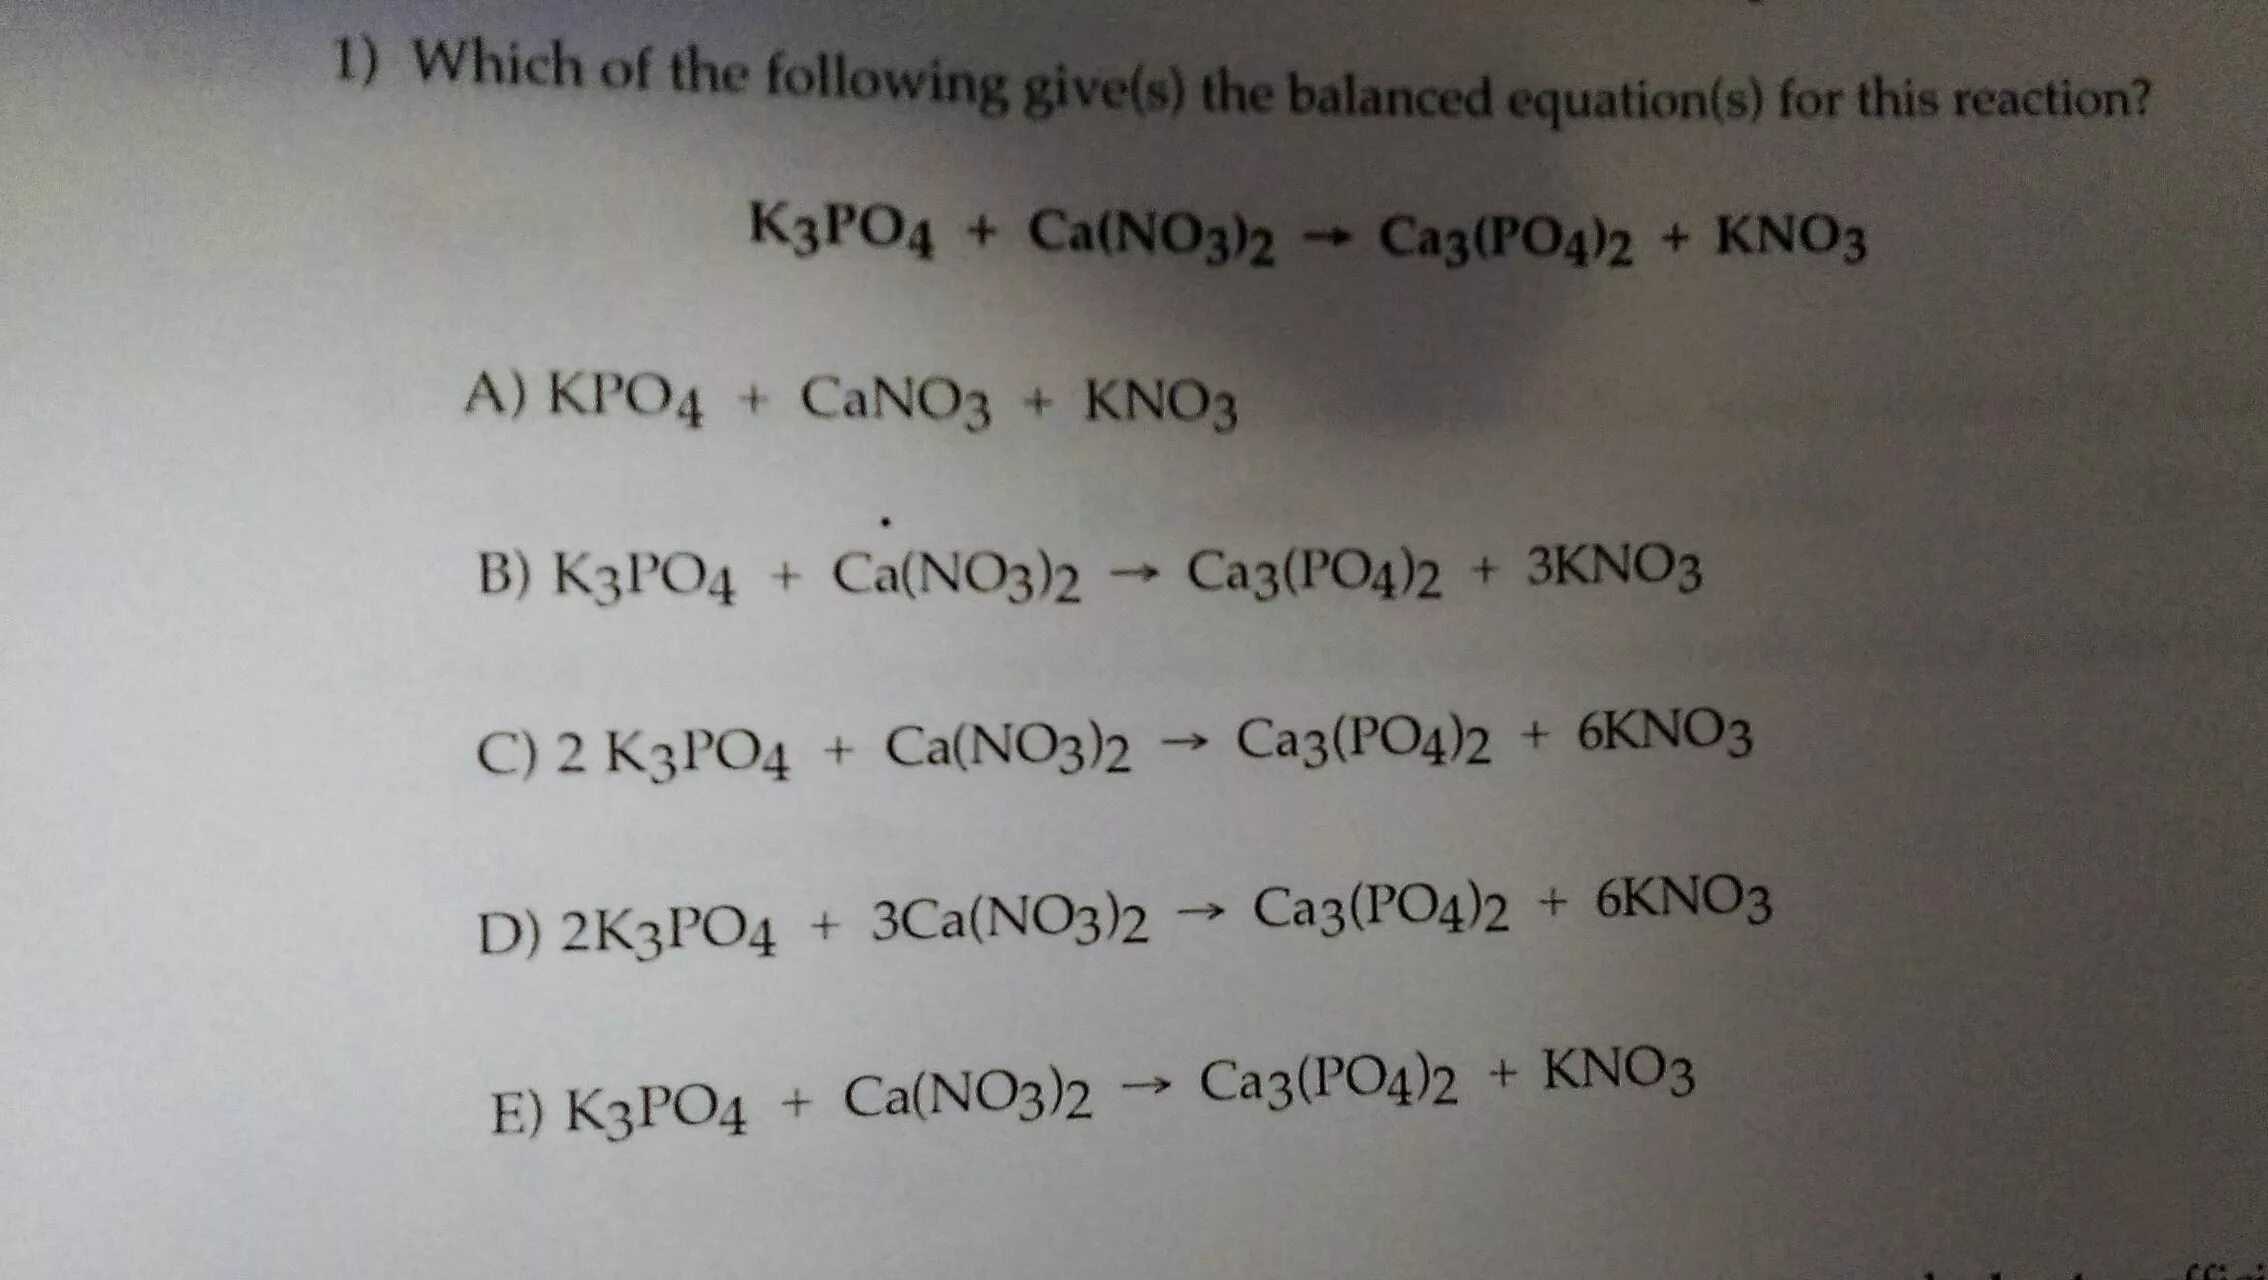 Kpo4. Kpo4 название. 3ca(no3)2 + 2kpo4 = kno3 + ca3(po4)2.